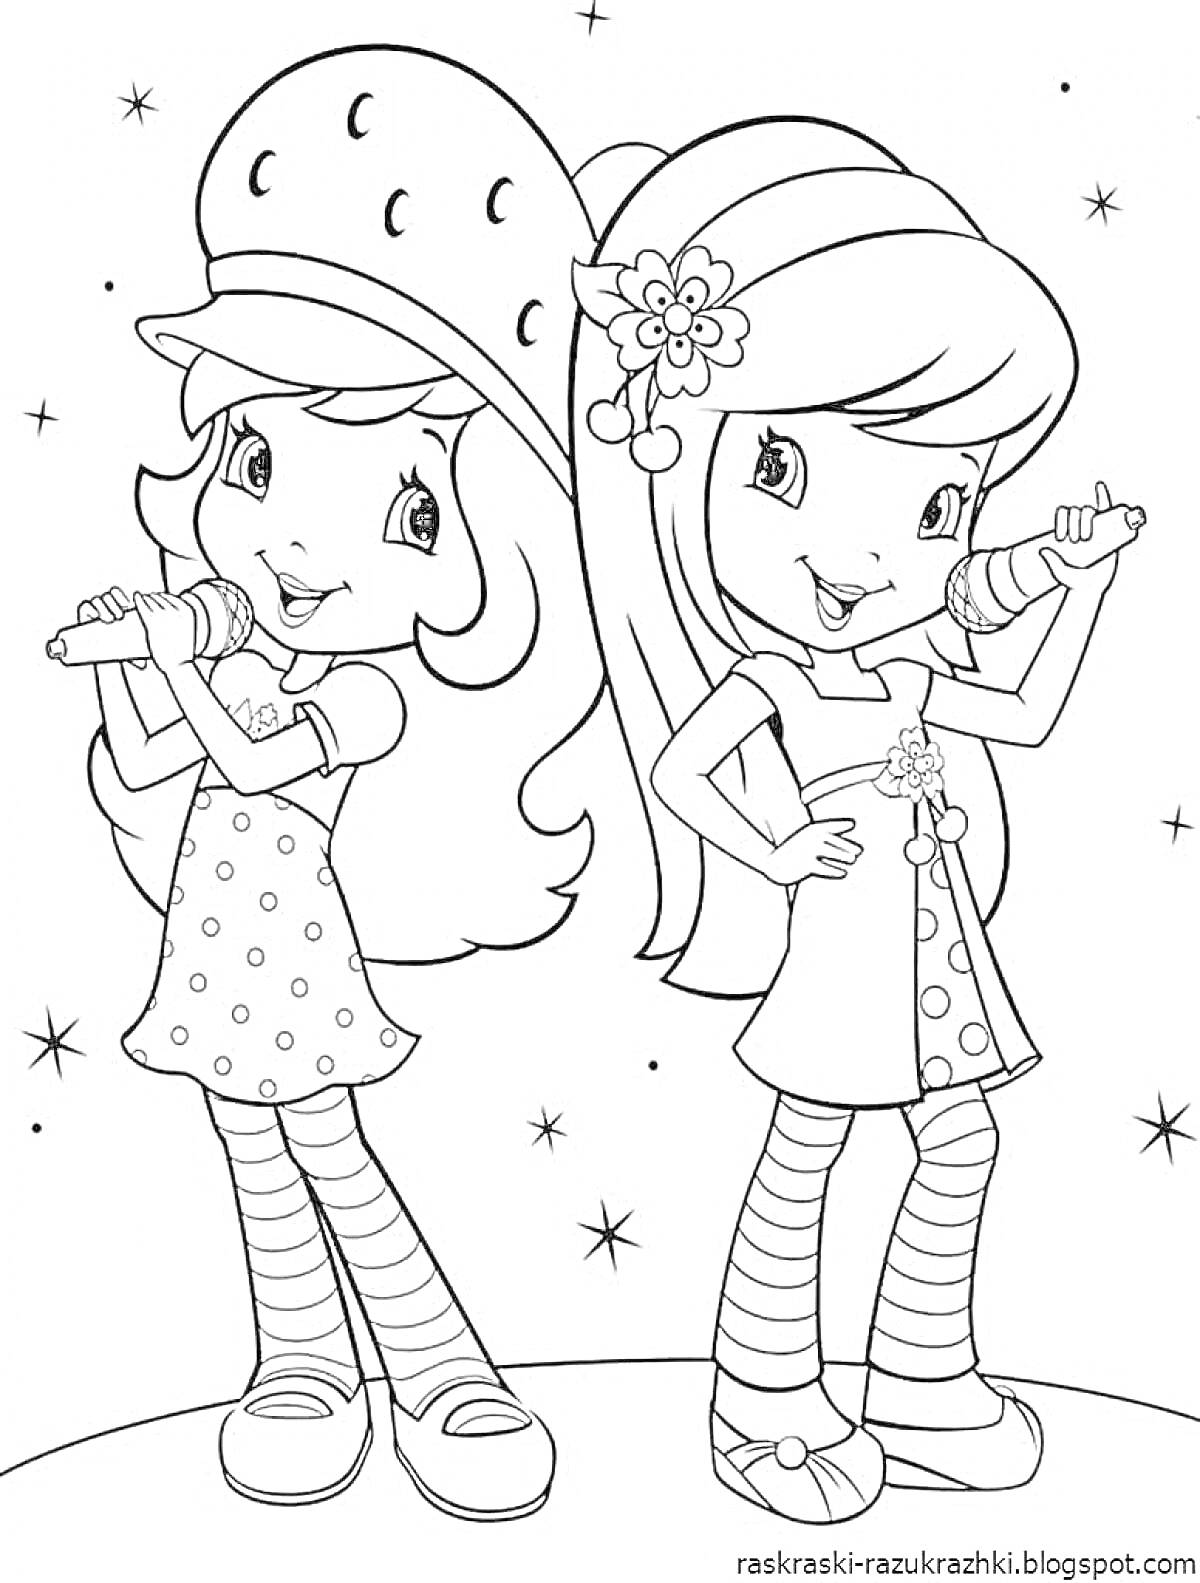 Раскраска Две девочки с длинными волосами поют в микрофоны на фоне звезд